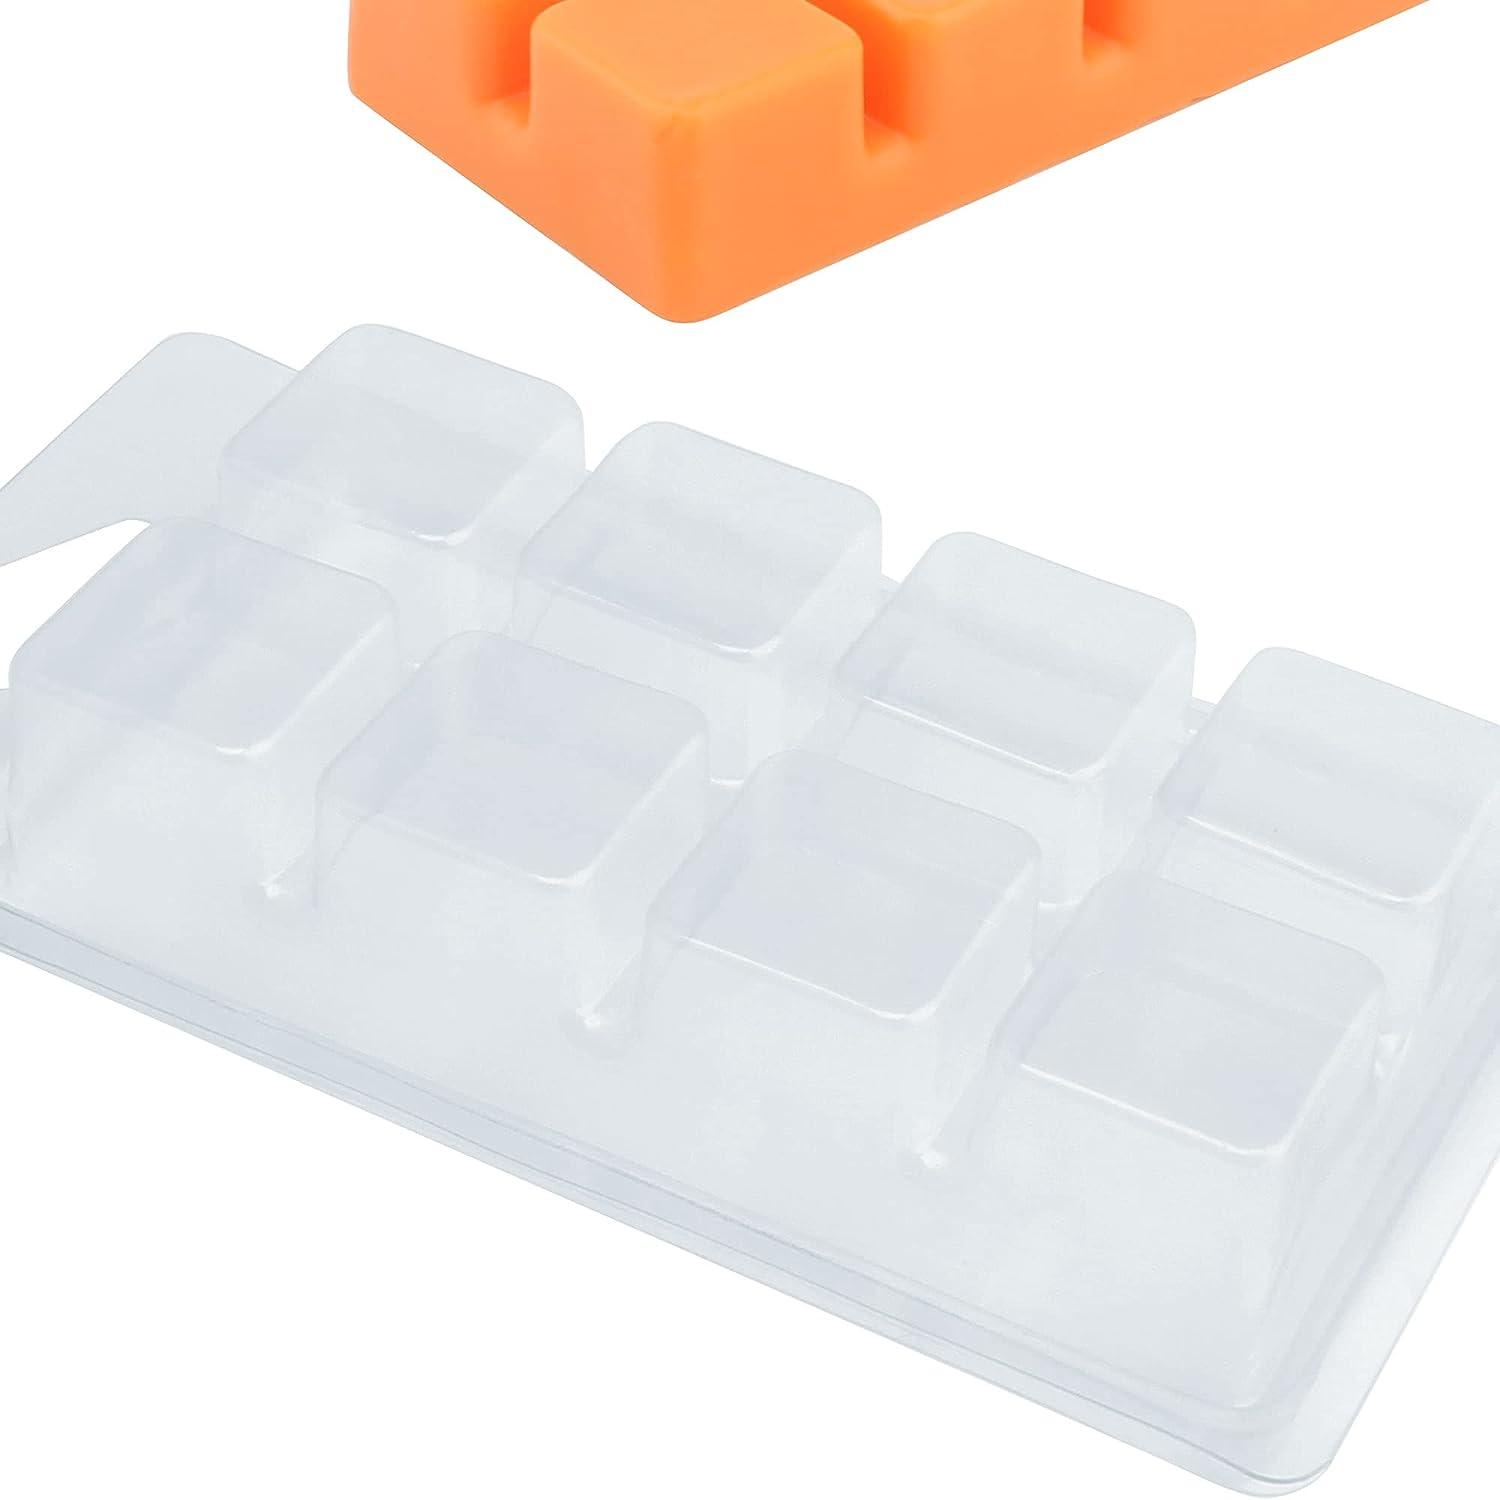 100 PCS Wax Melt Molds Wax Melt Containers Wax Melt Clamshells